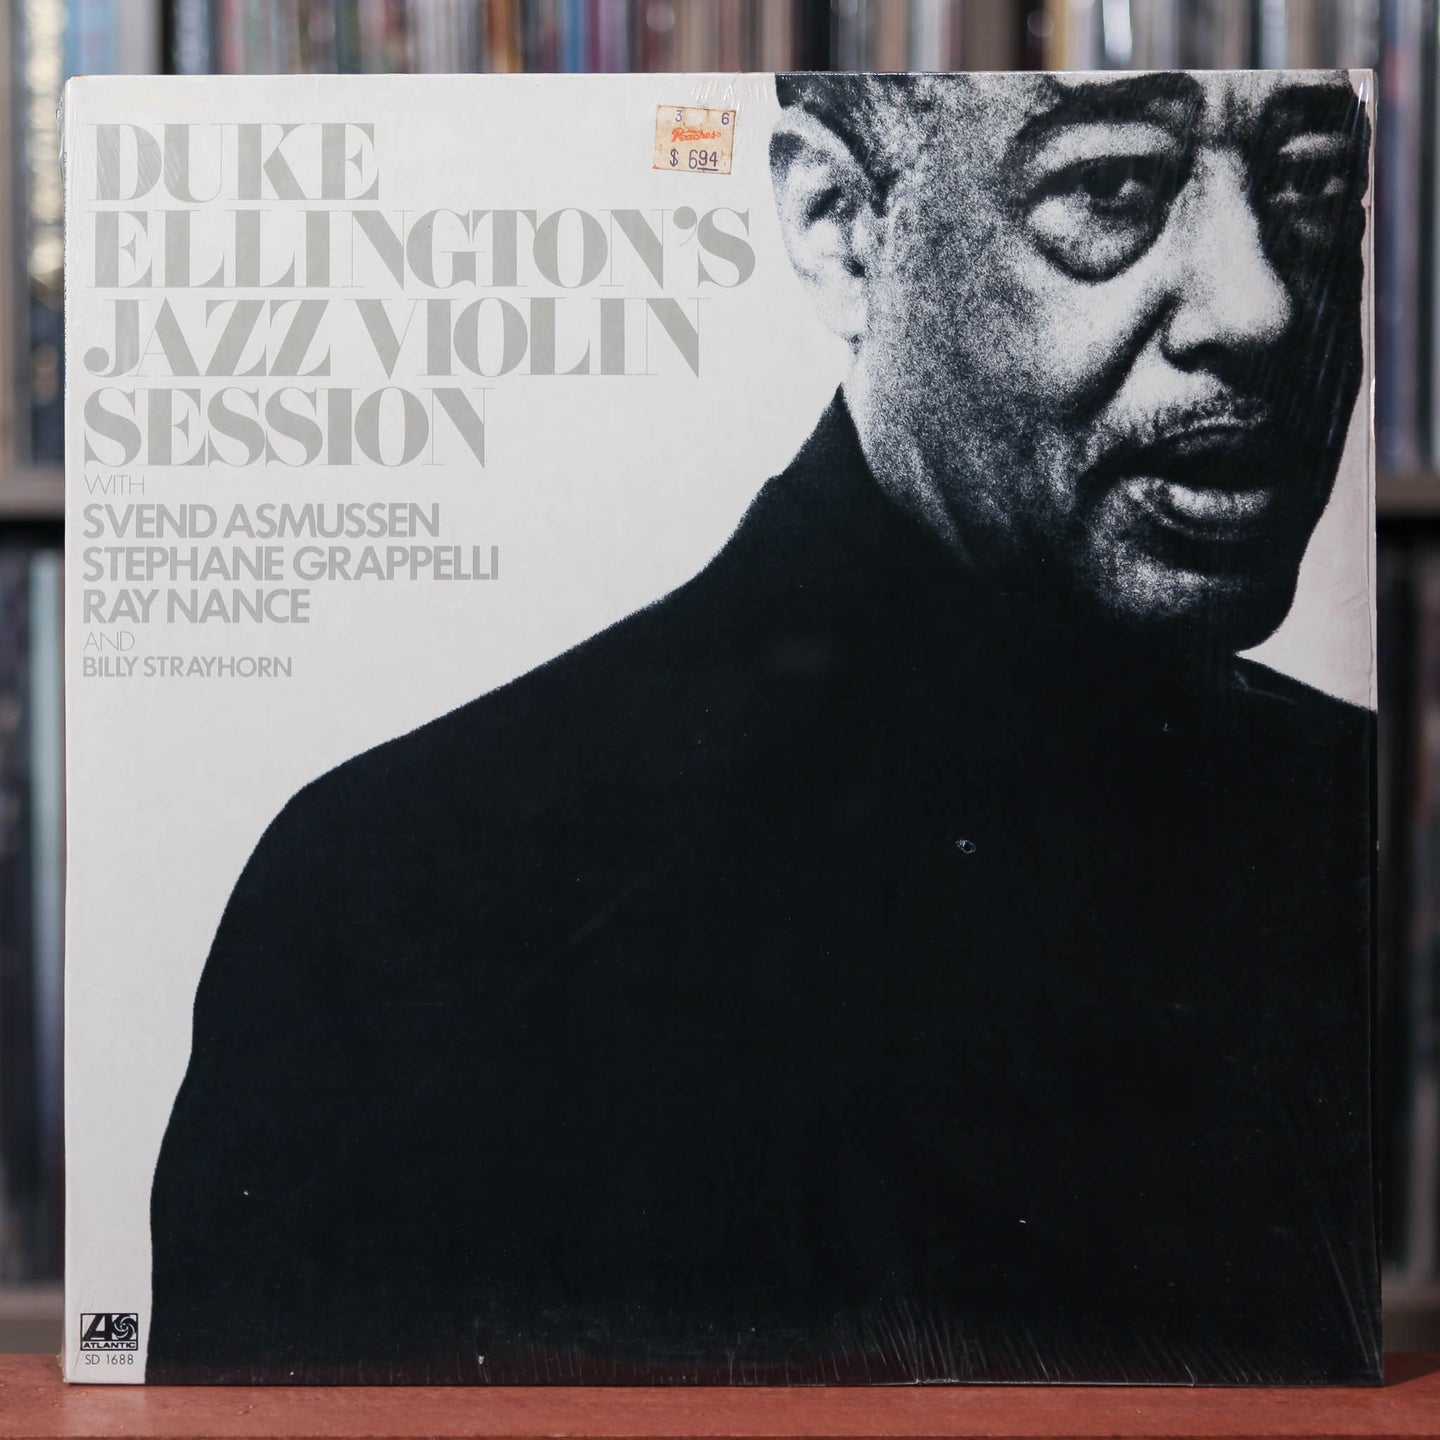 Duke Ellington - Duke Ellington's Jazz Violin Session - 1976 Atlantic, EX/EX w/Shrink